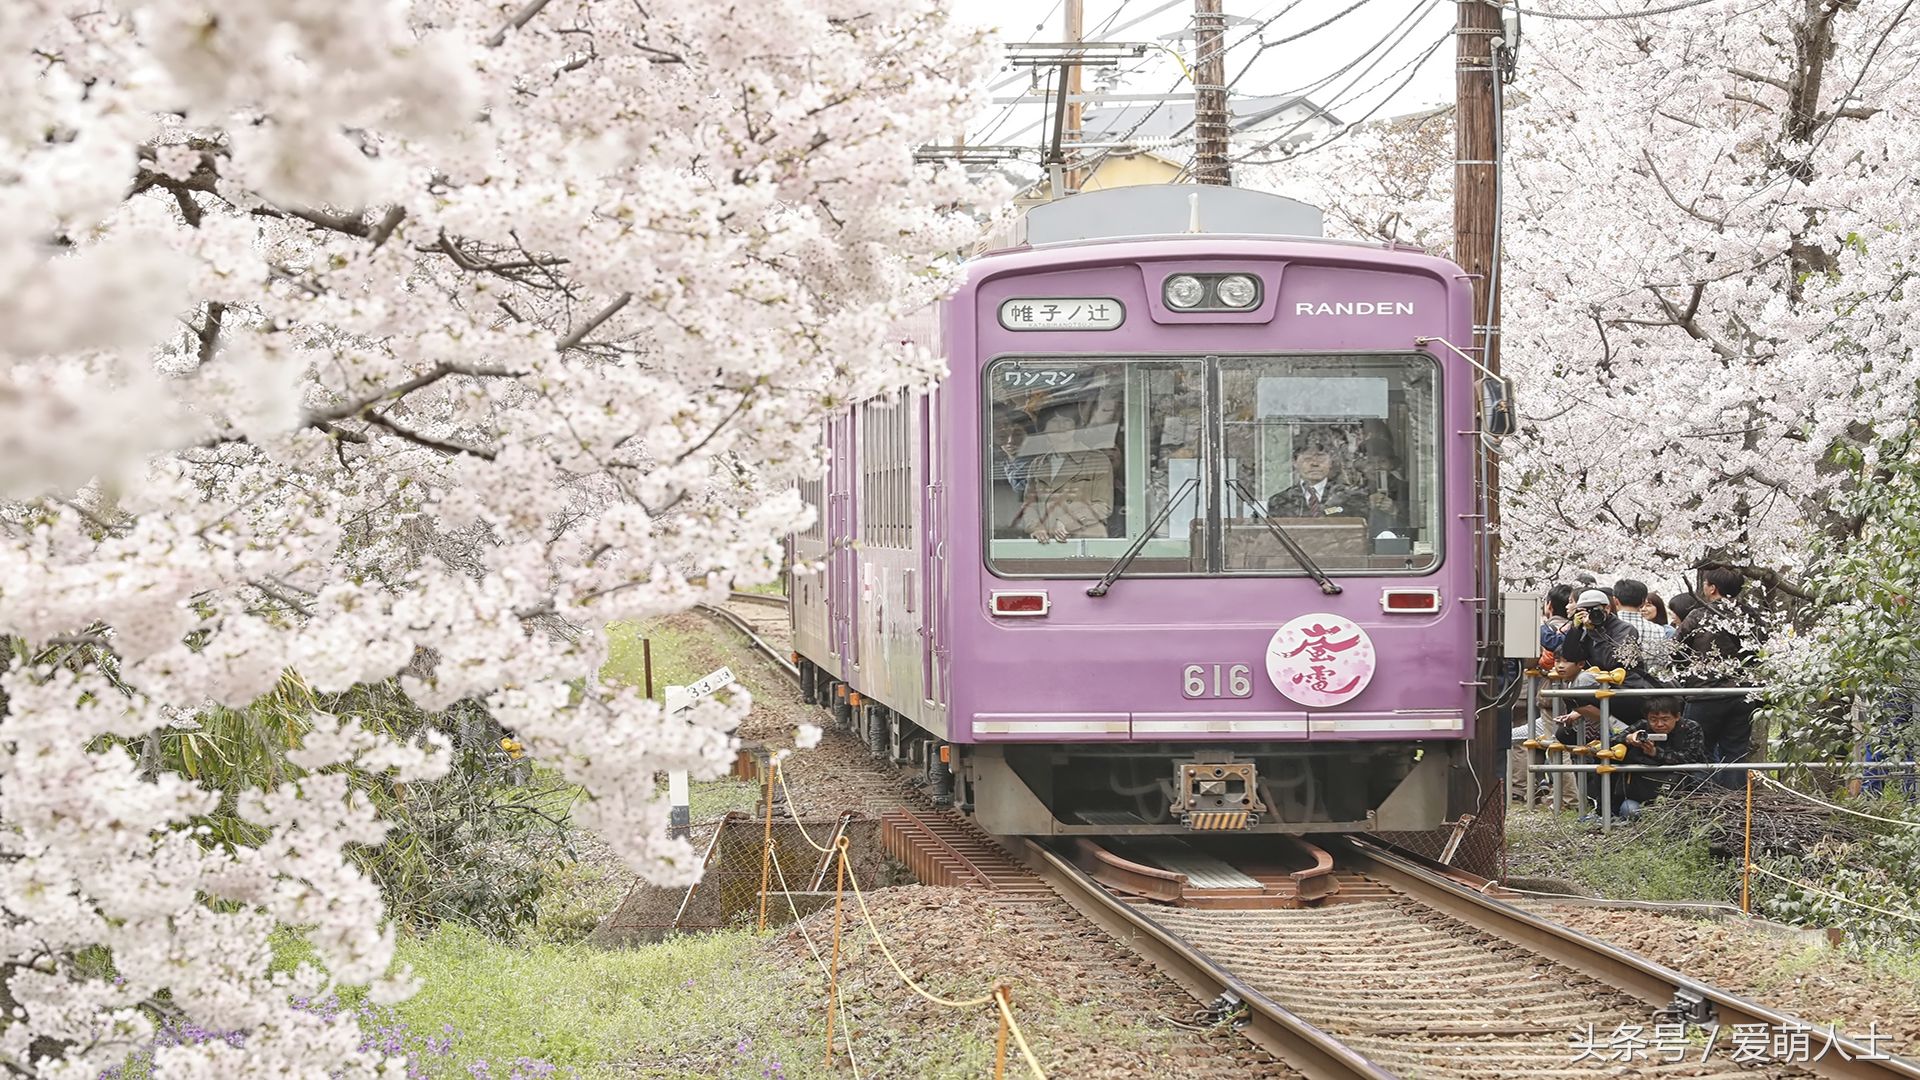 去日本看樱花,这4个地方情侣一定不能错过,错